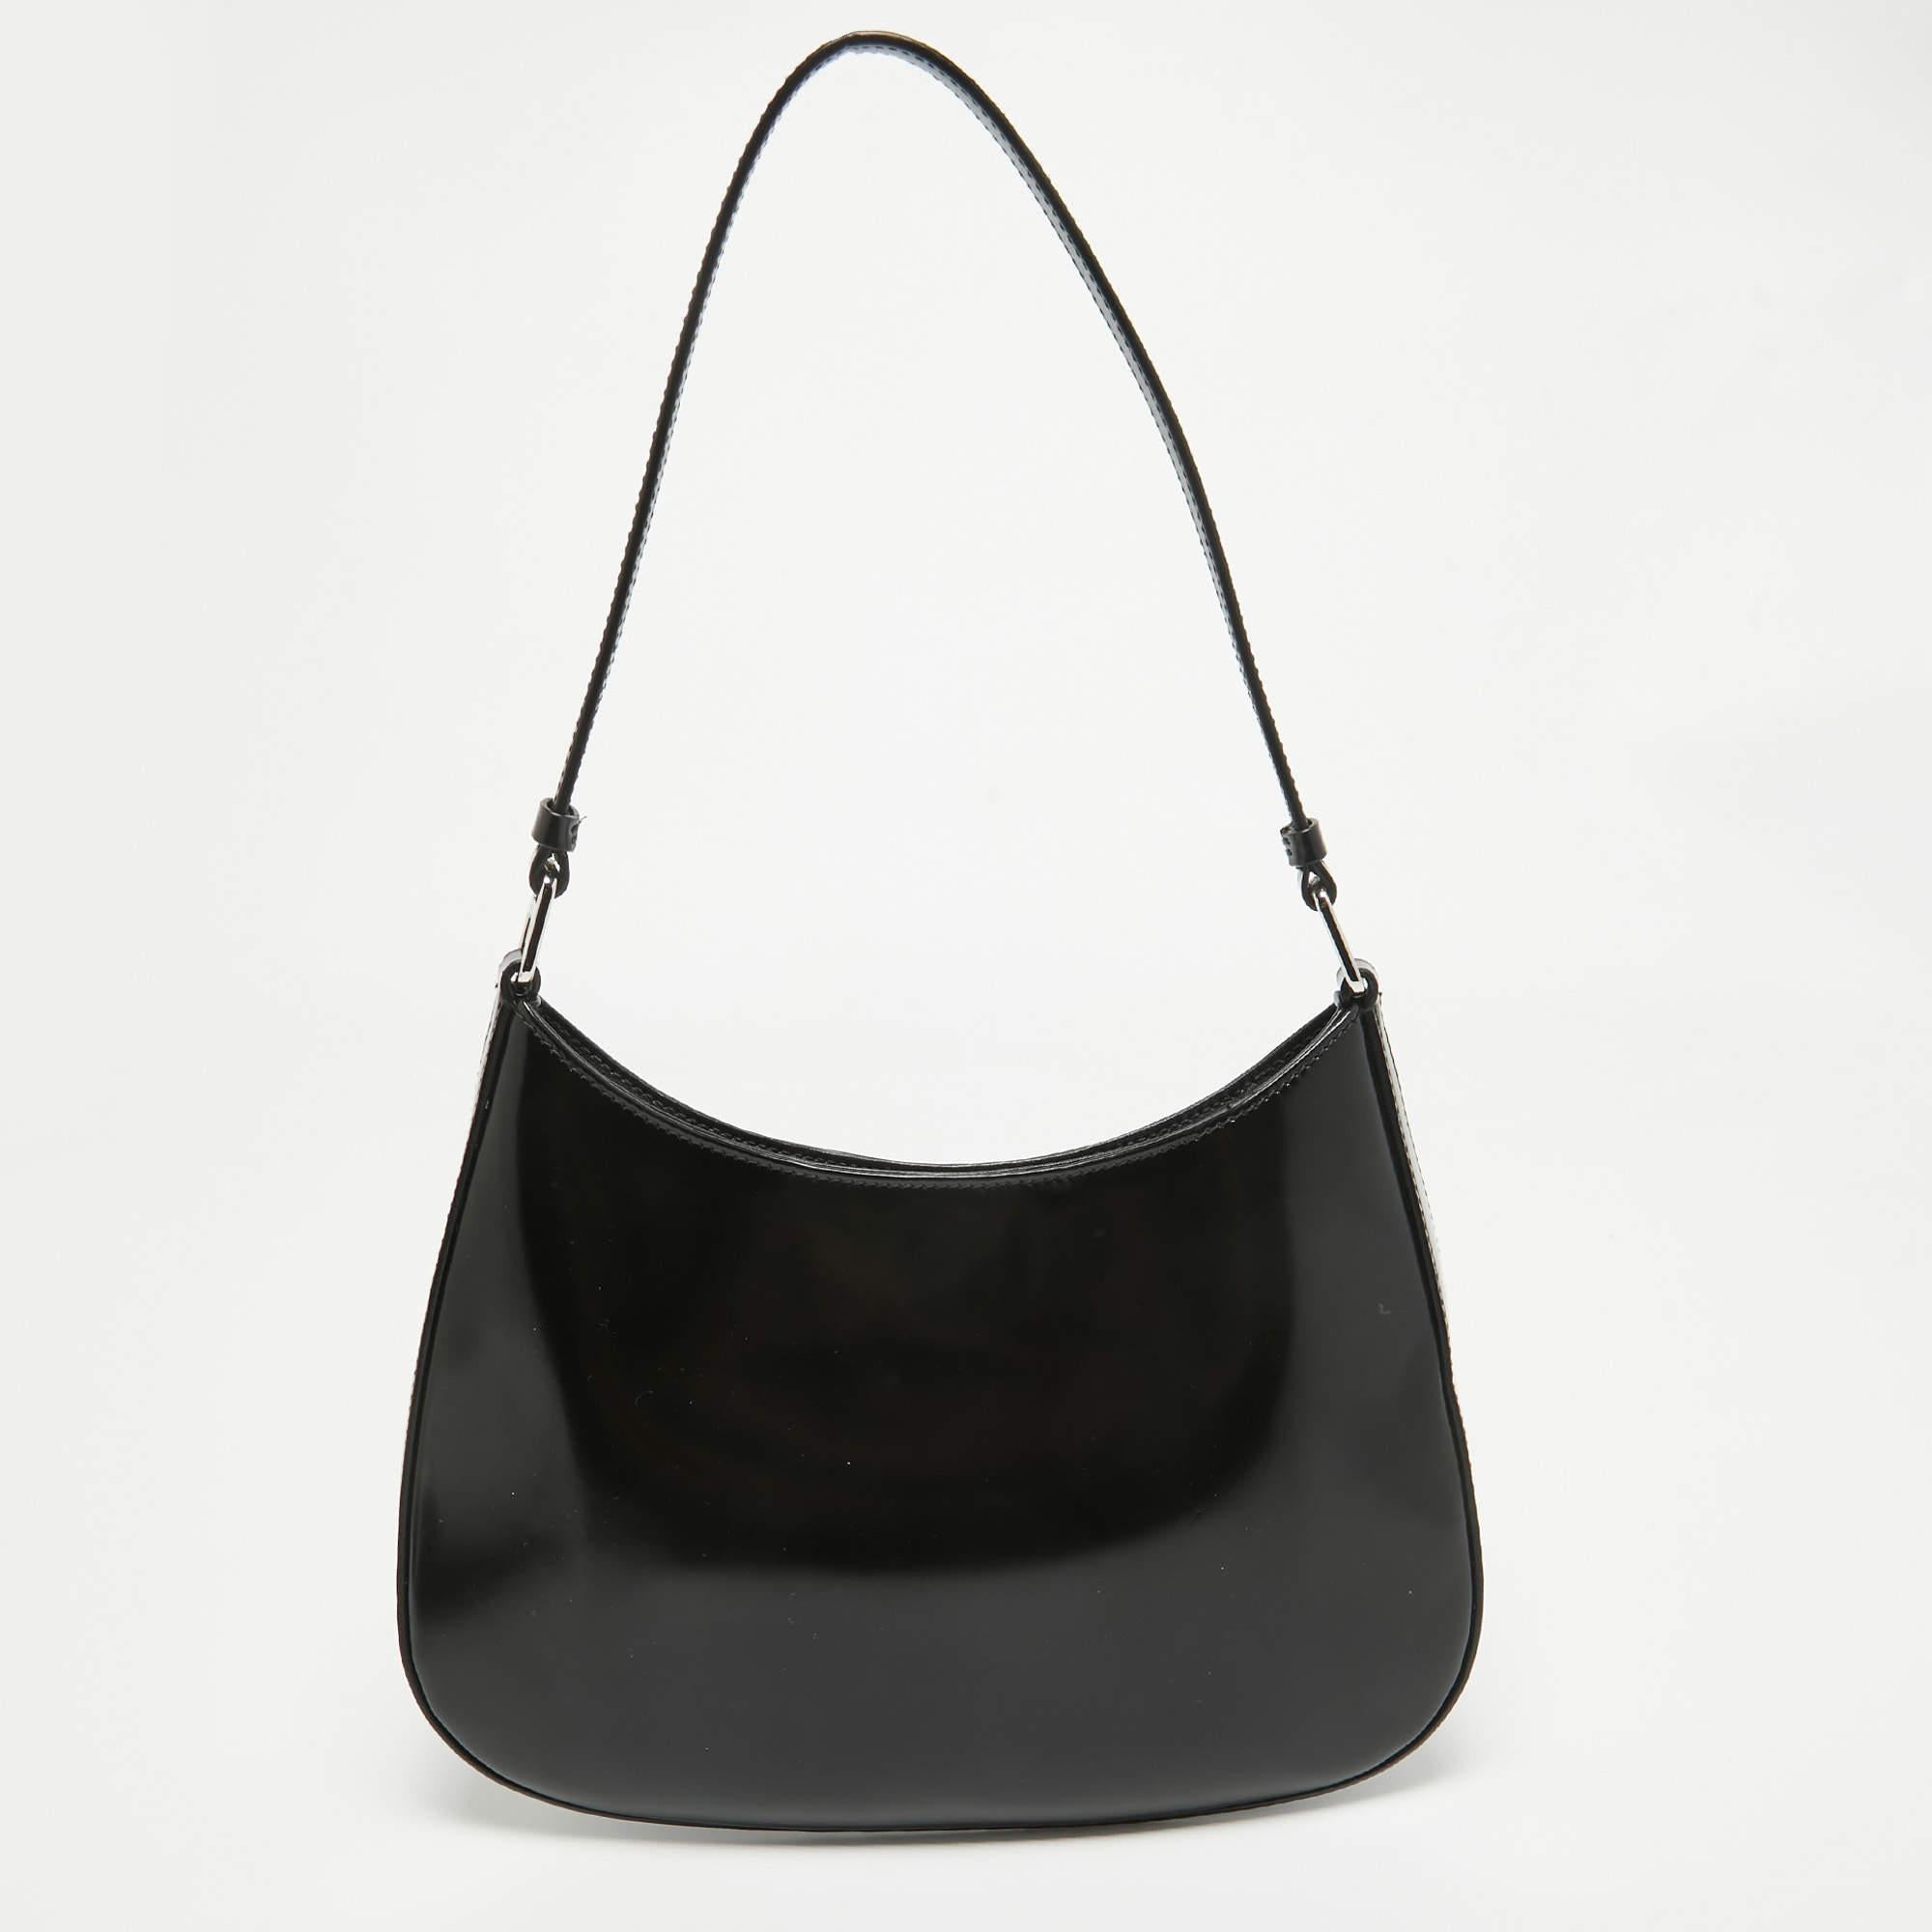 Confectionné avec précision, le sac à bandoulière Cleo de Prada affiche une allure intemporelle. Son cuir souple, méticuleusement brossé à la perfection, affiche un charme à la fois élégant et discret. Avec son intérieur spacieux et sa bandoulière